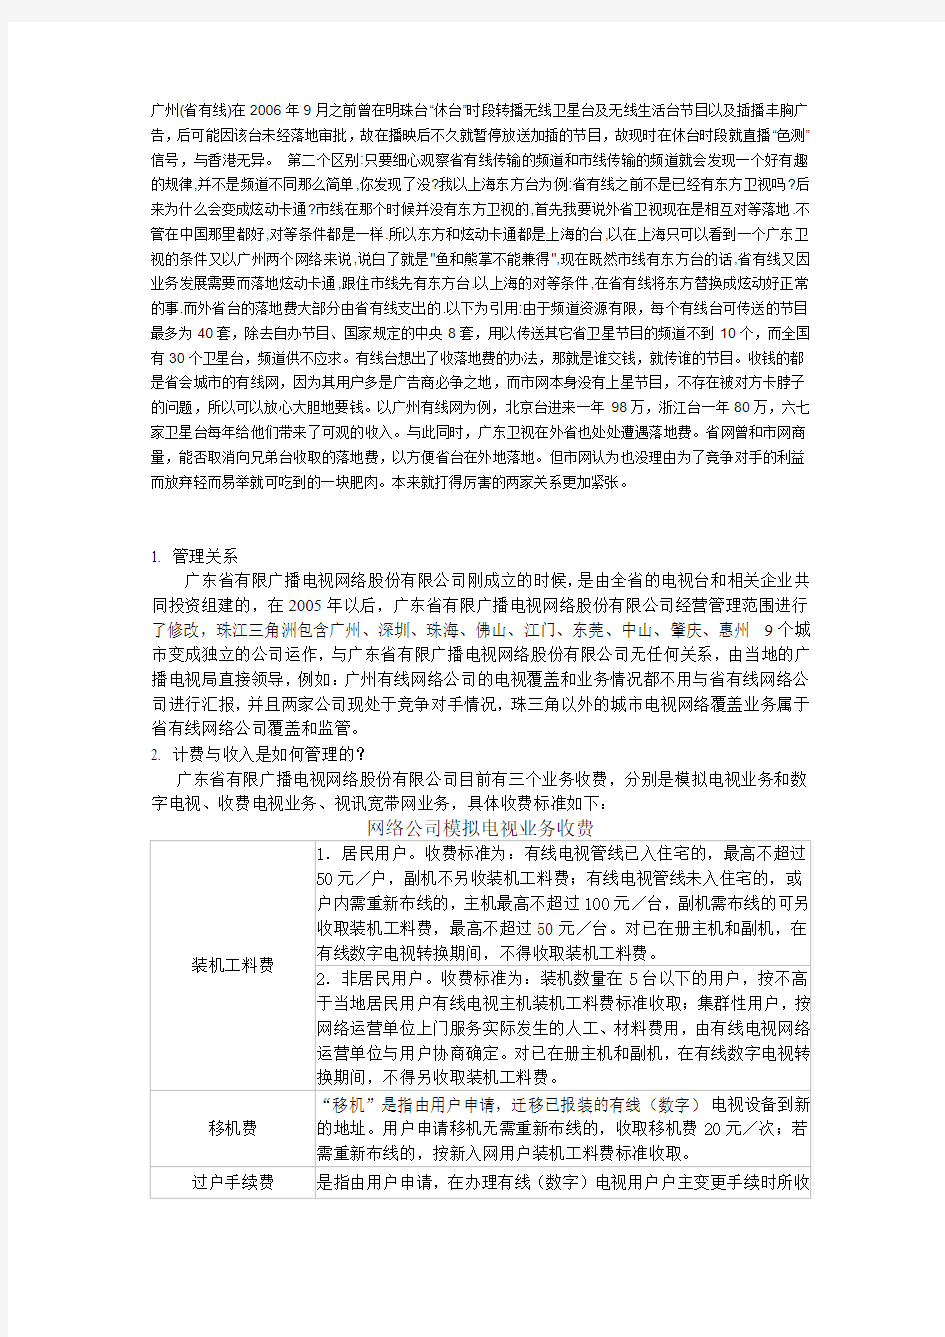 广东省广播电视网络有限公司报告